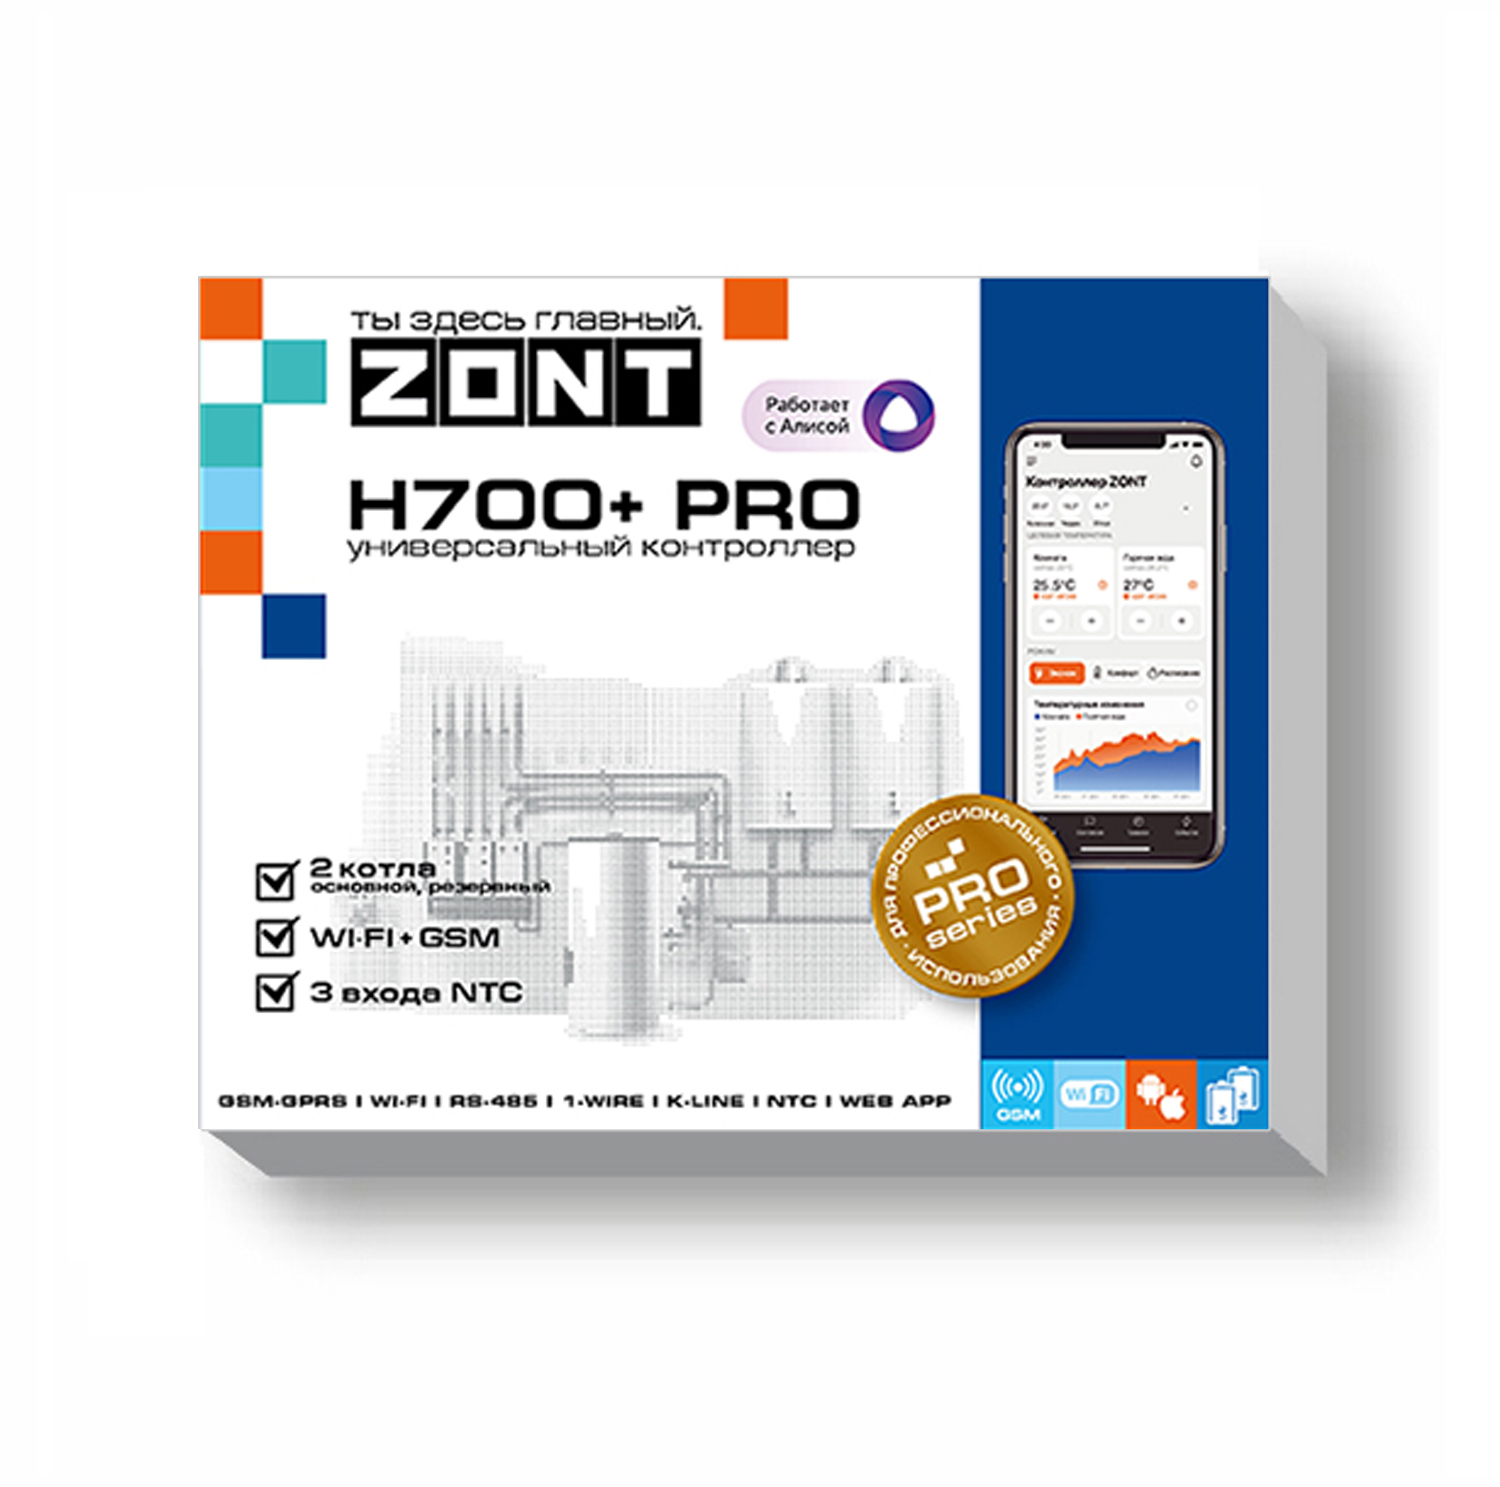 Детальное изображение товара "Универсальный GSM/Wi-Fi контроллер ZONT H700+ Pro" из каталога оборудования для видеонаблюдения